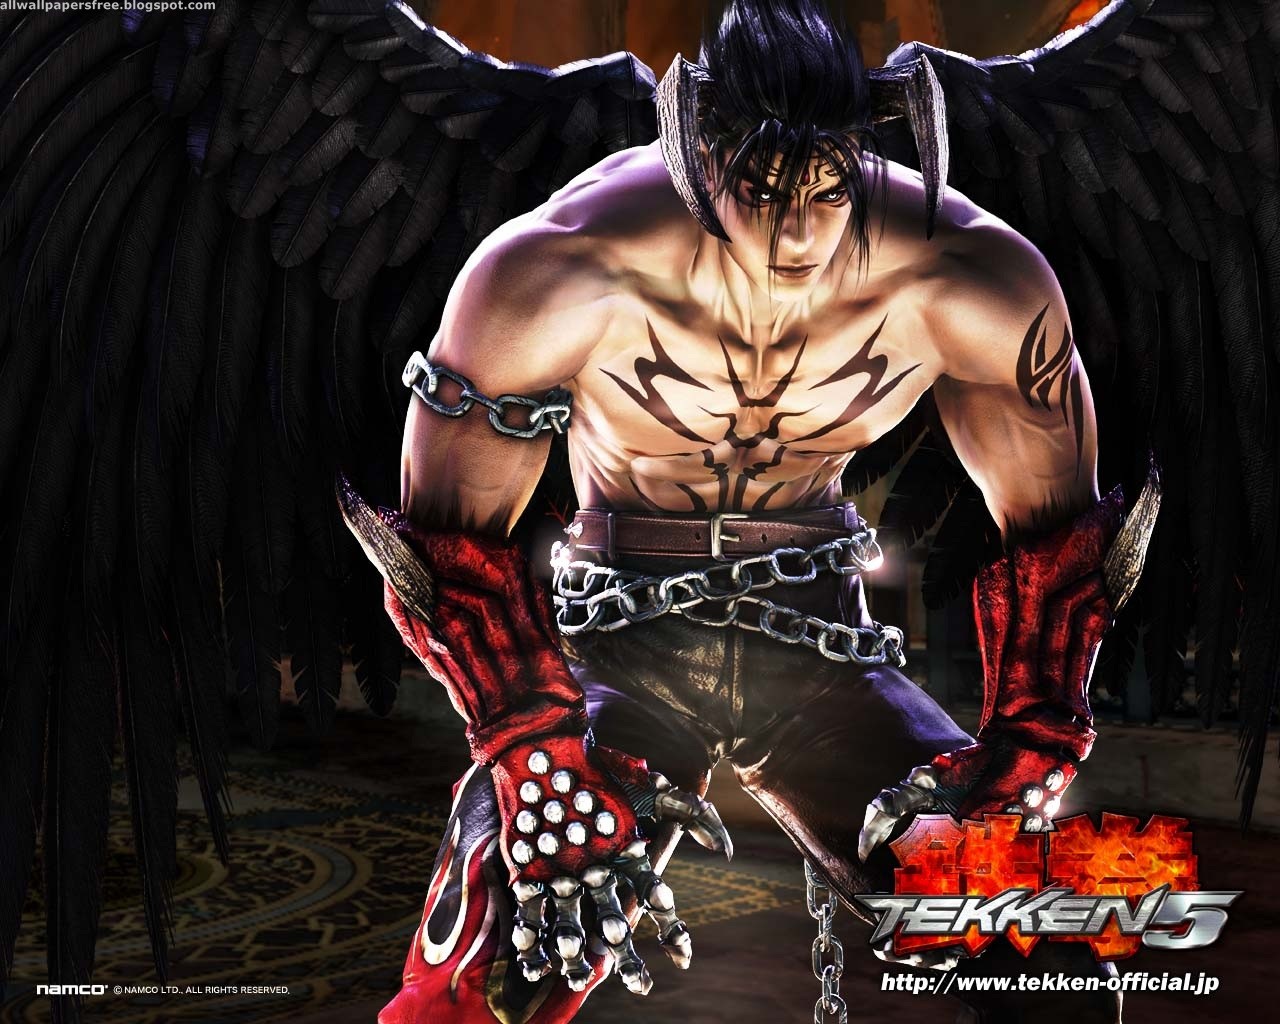 Melhores papéis de parede de Tekken 5 para tela do telefone